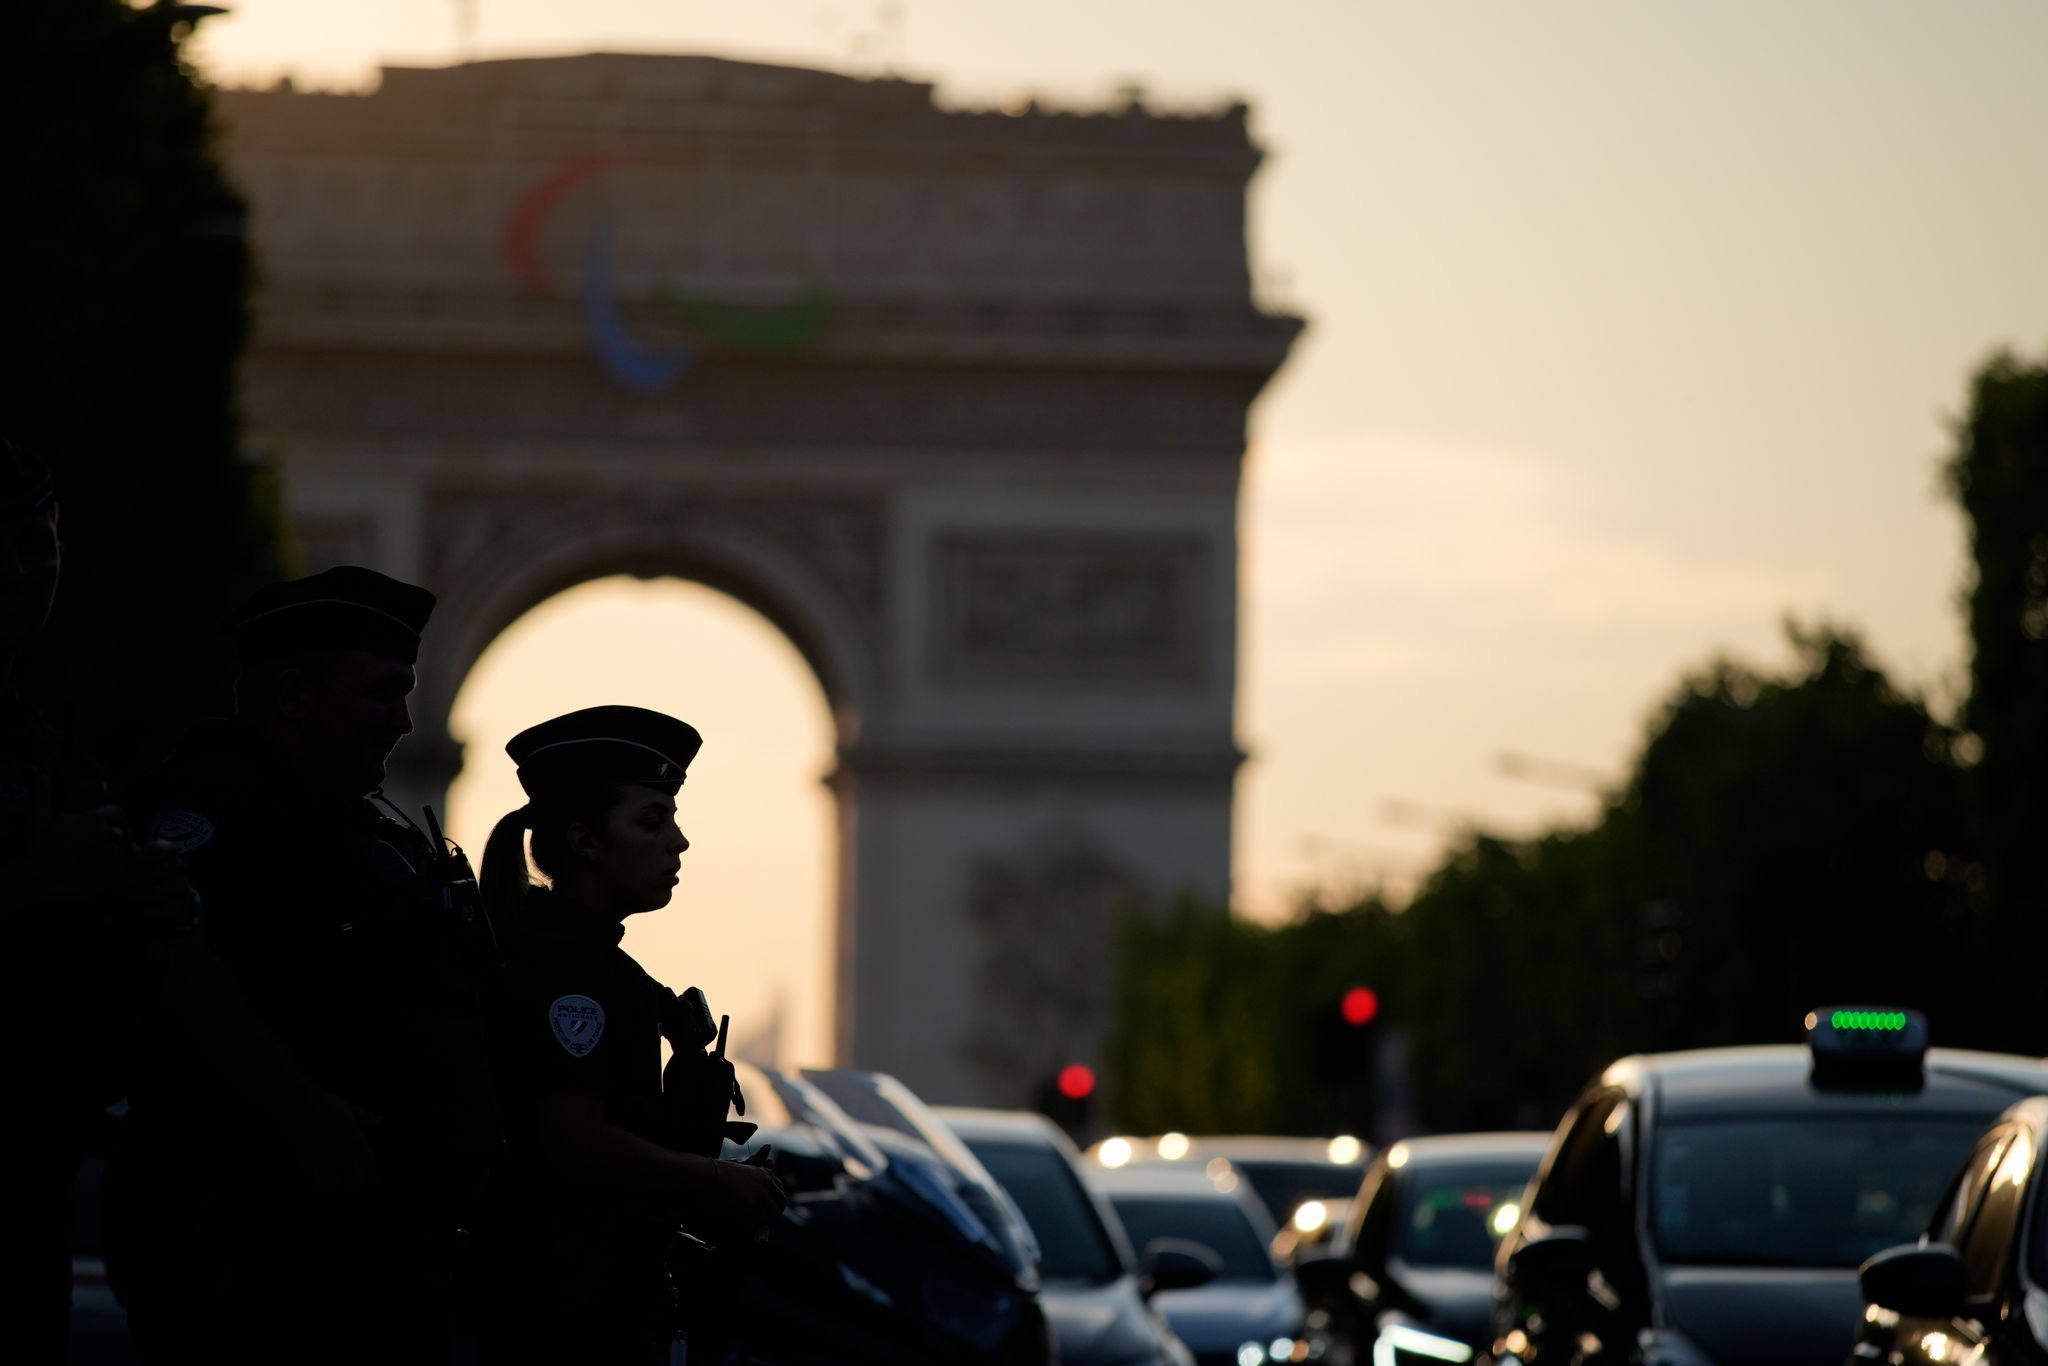 Terrorgefahr in Paris vor Olympia, Frankreich setzt auf maximale Sicherheitsvorkehrungen